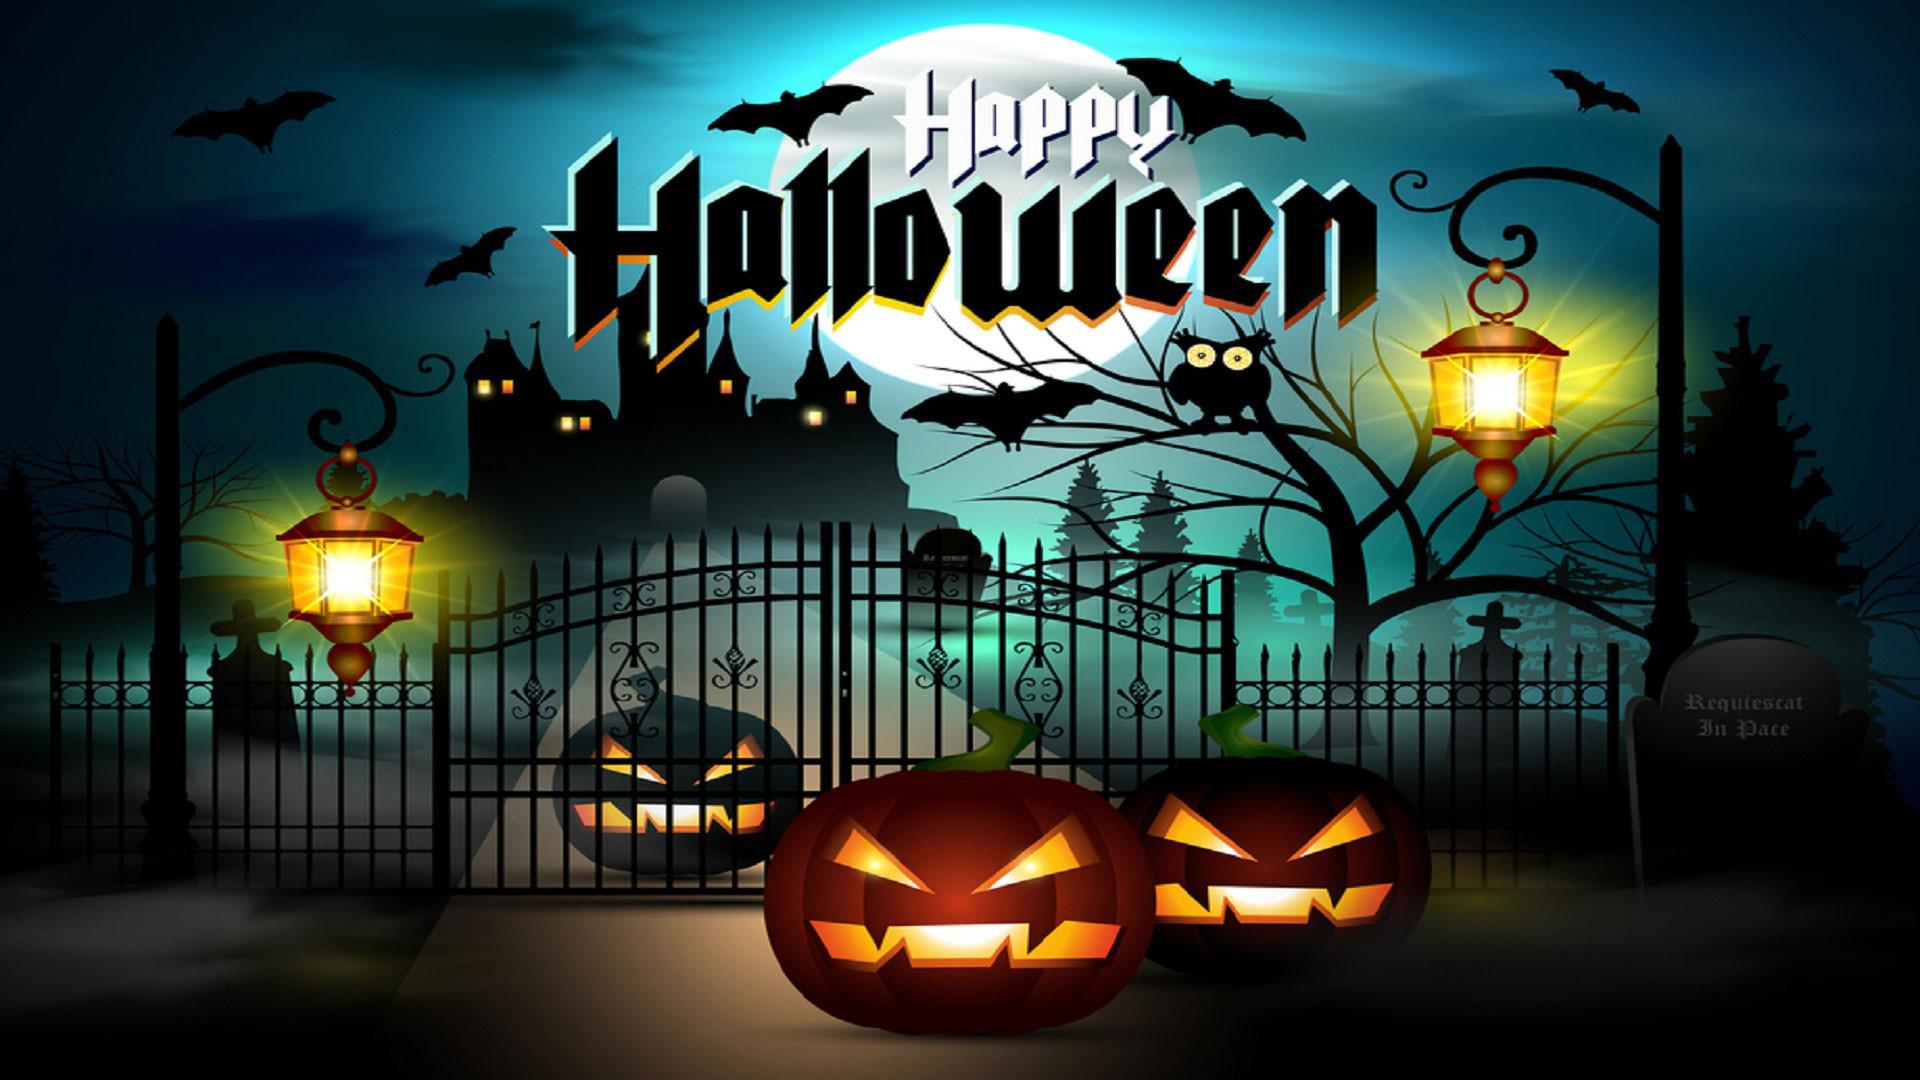 Happy Halloween 2021 Wallpapers  Top 25 Best Halloween Backgrounds Download